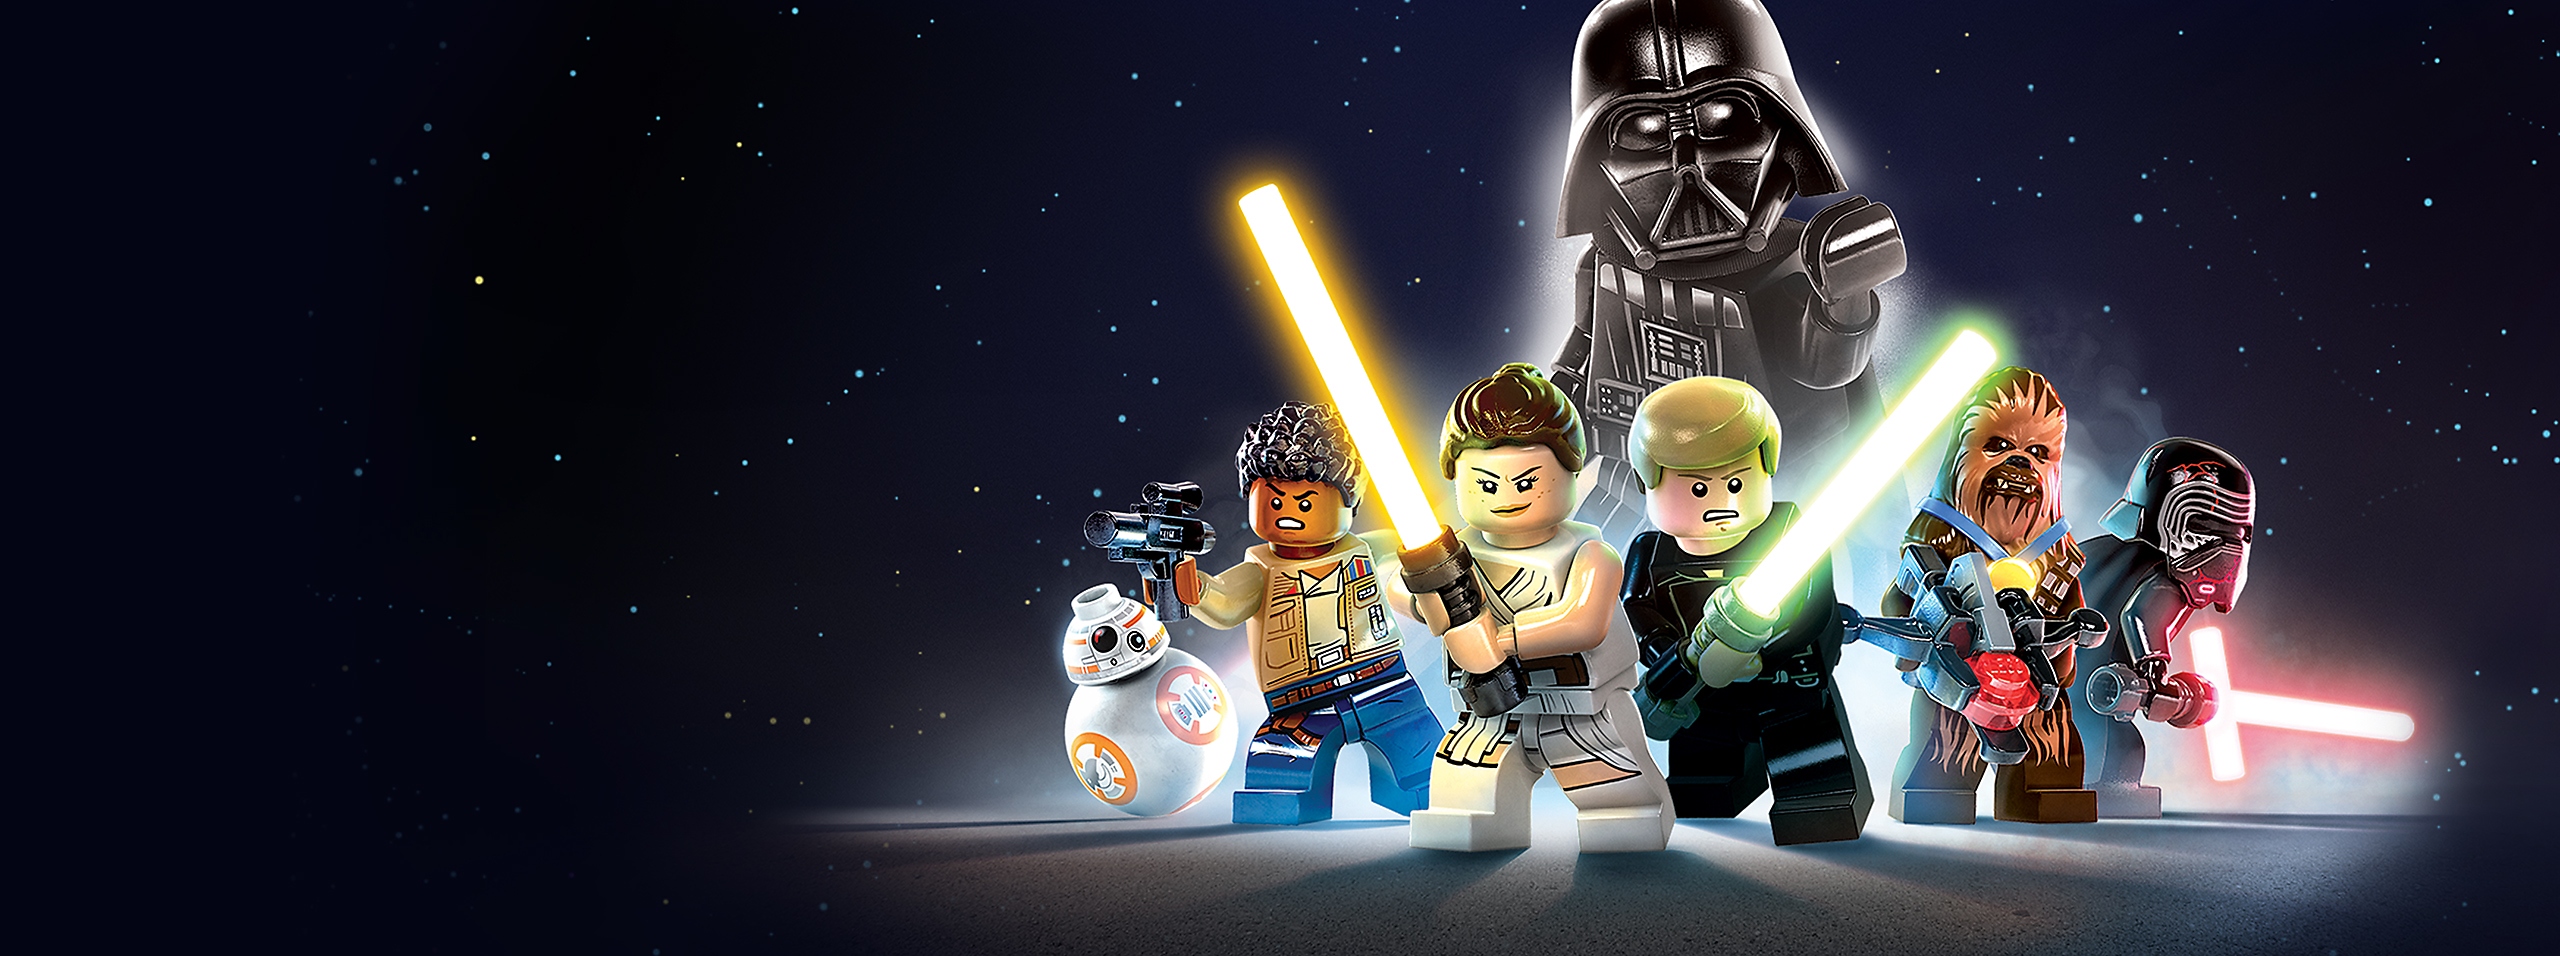 LEGO Star Wars:‎ The Skywalker Saga العمل الفني للبطل